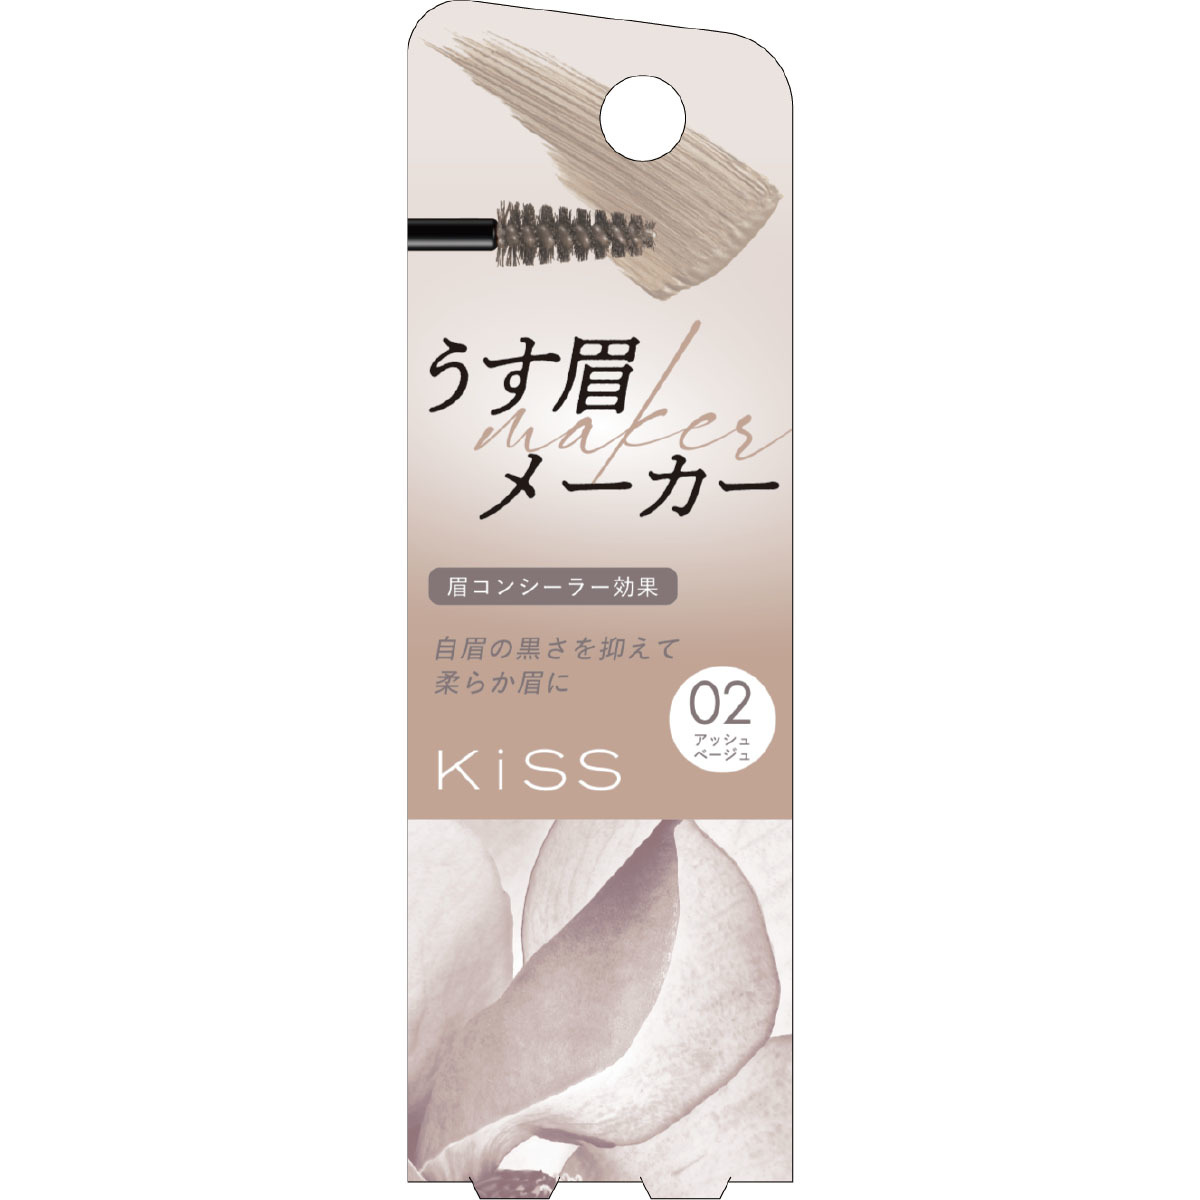 キス うす眉メーカー02 | Kiss | マルイウェブチャネル